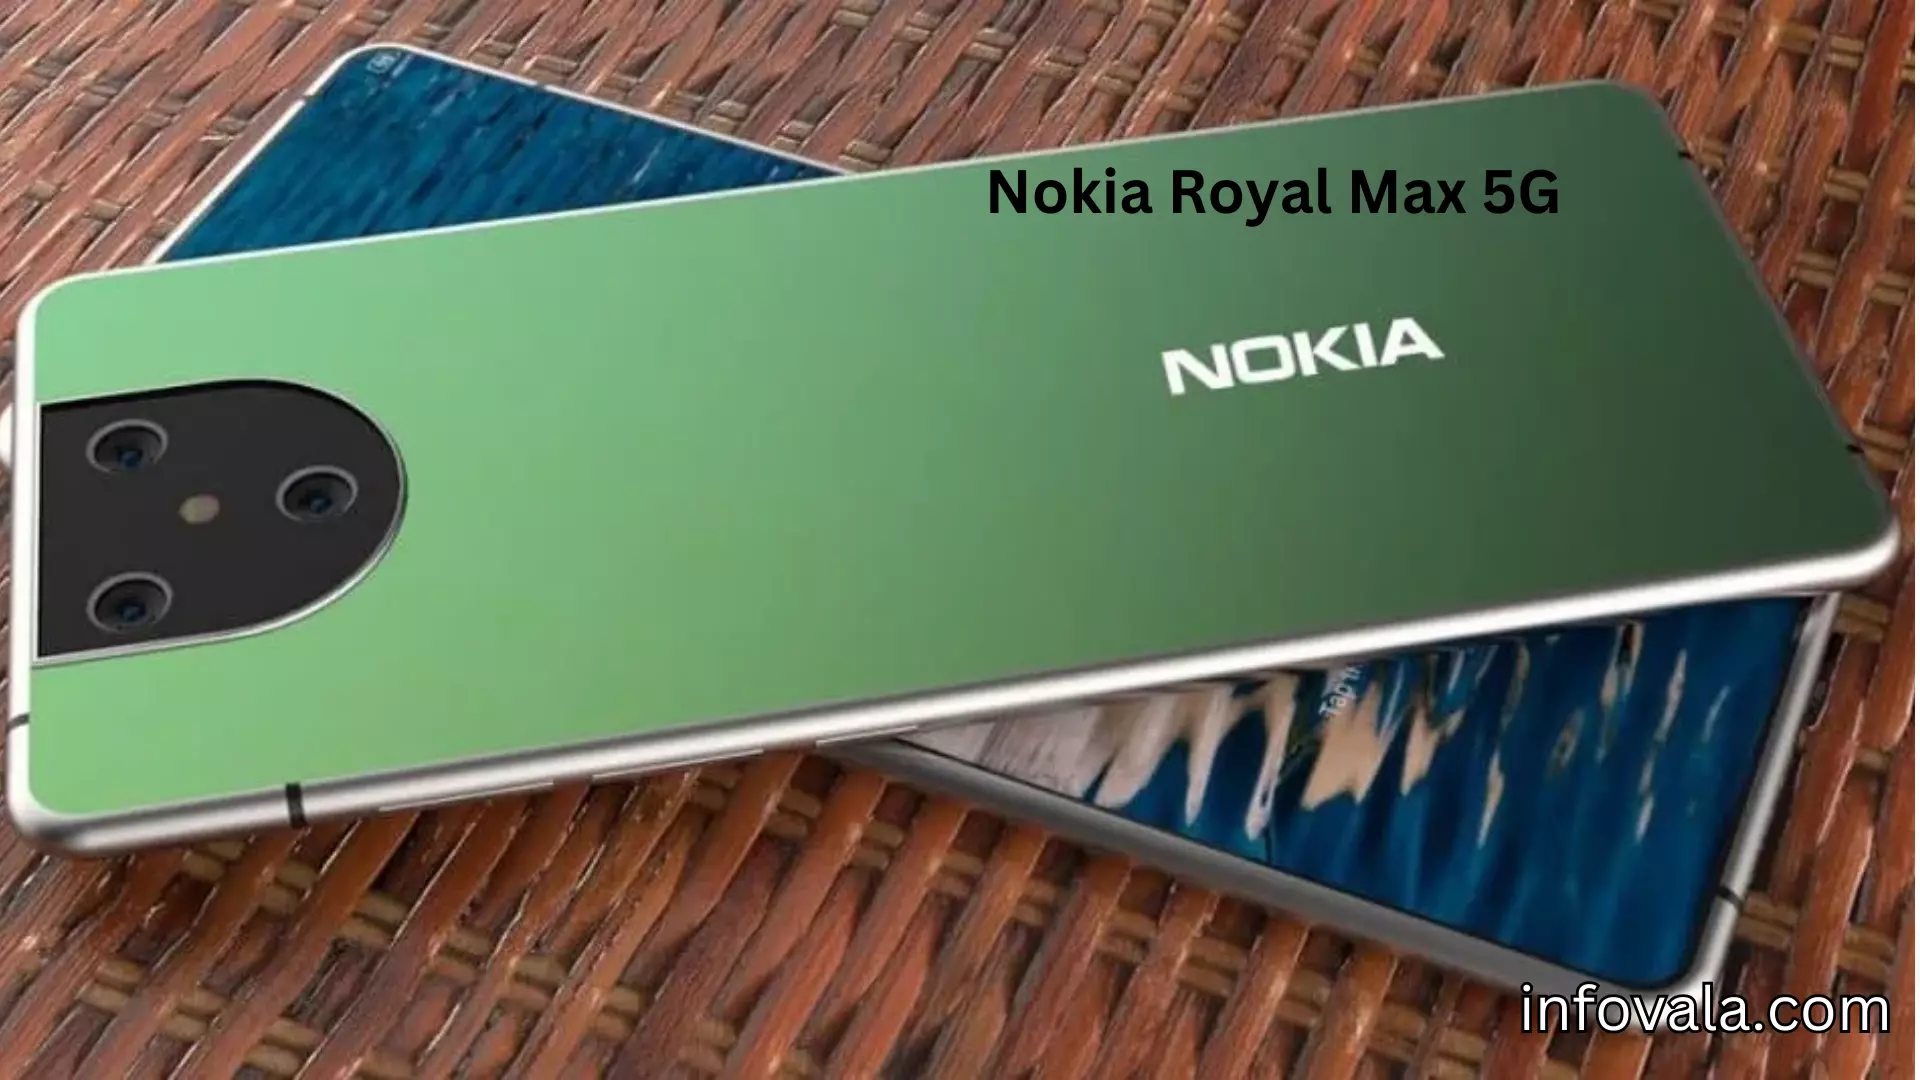 Nokia Royal Max 5G